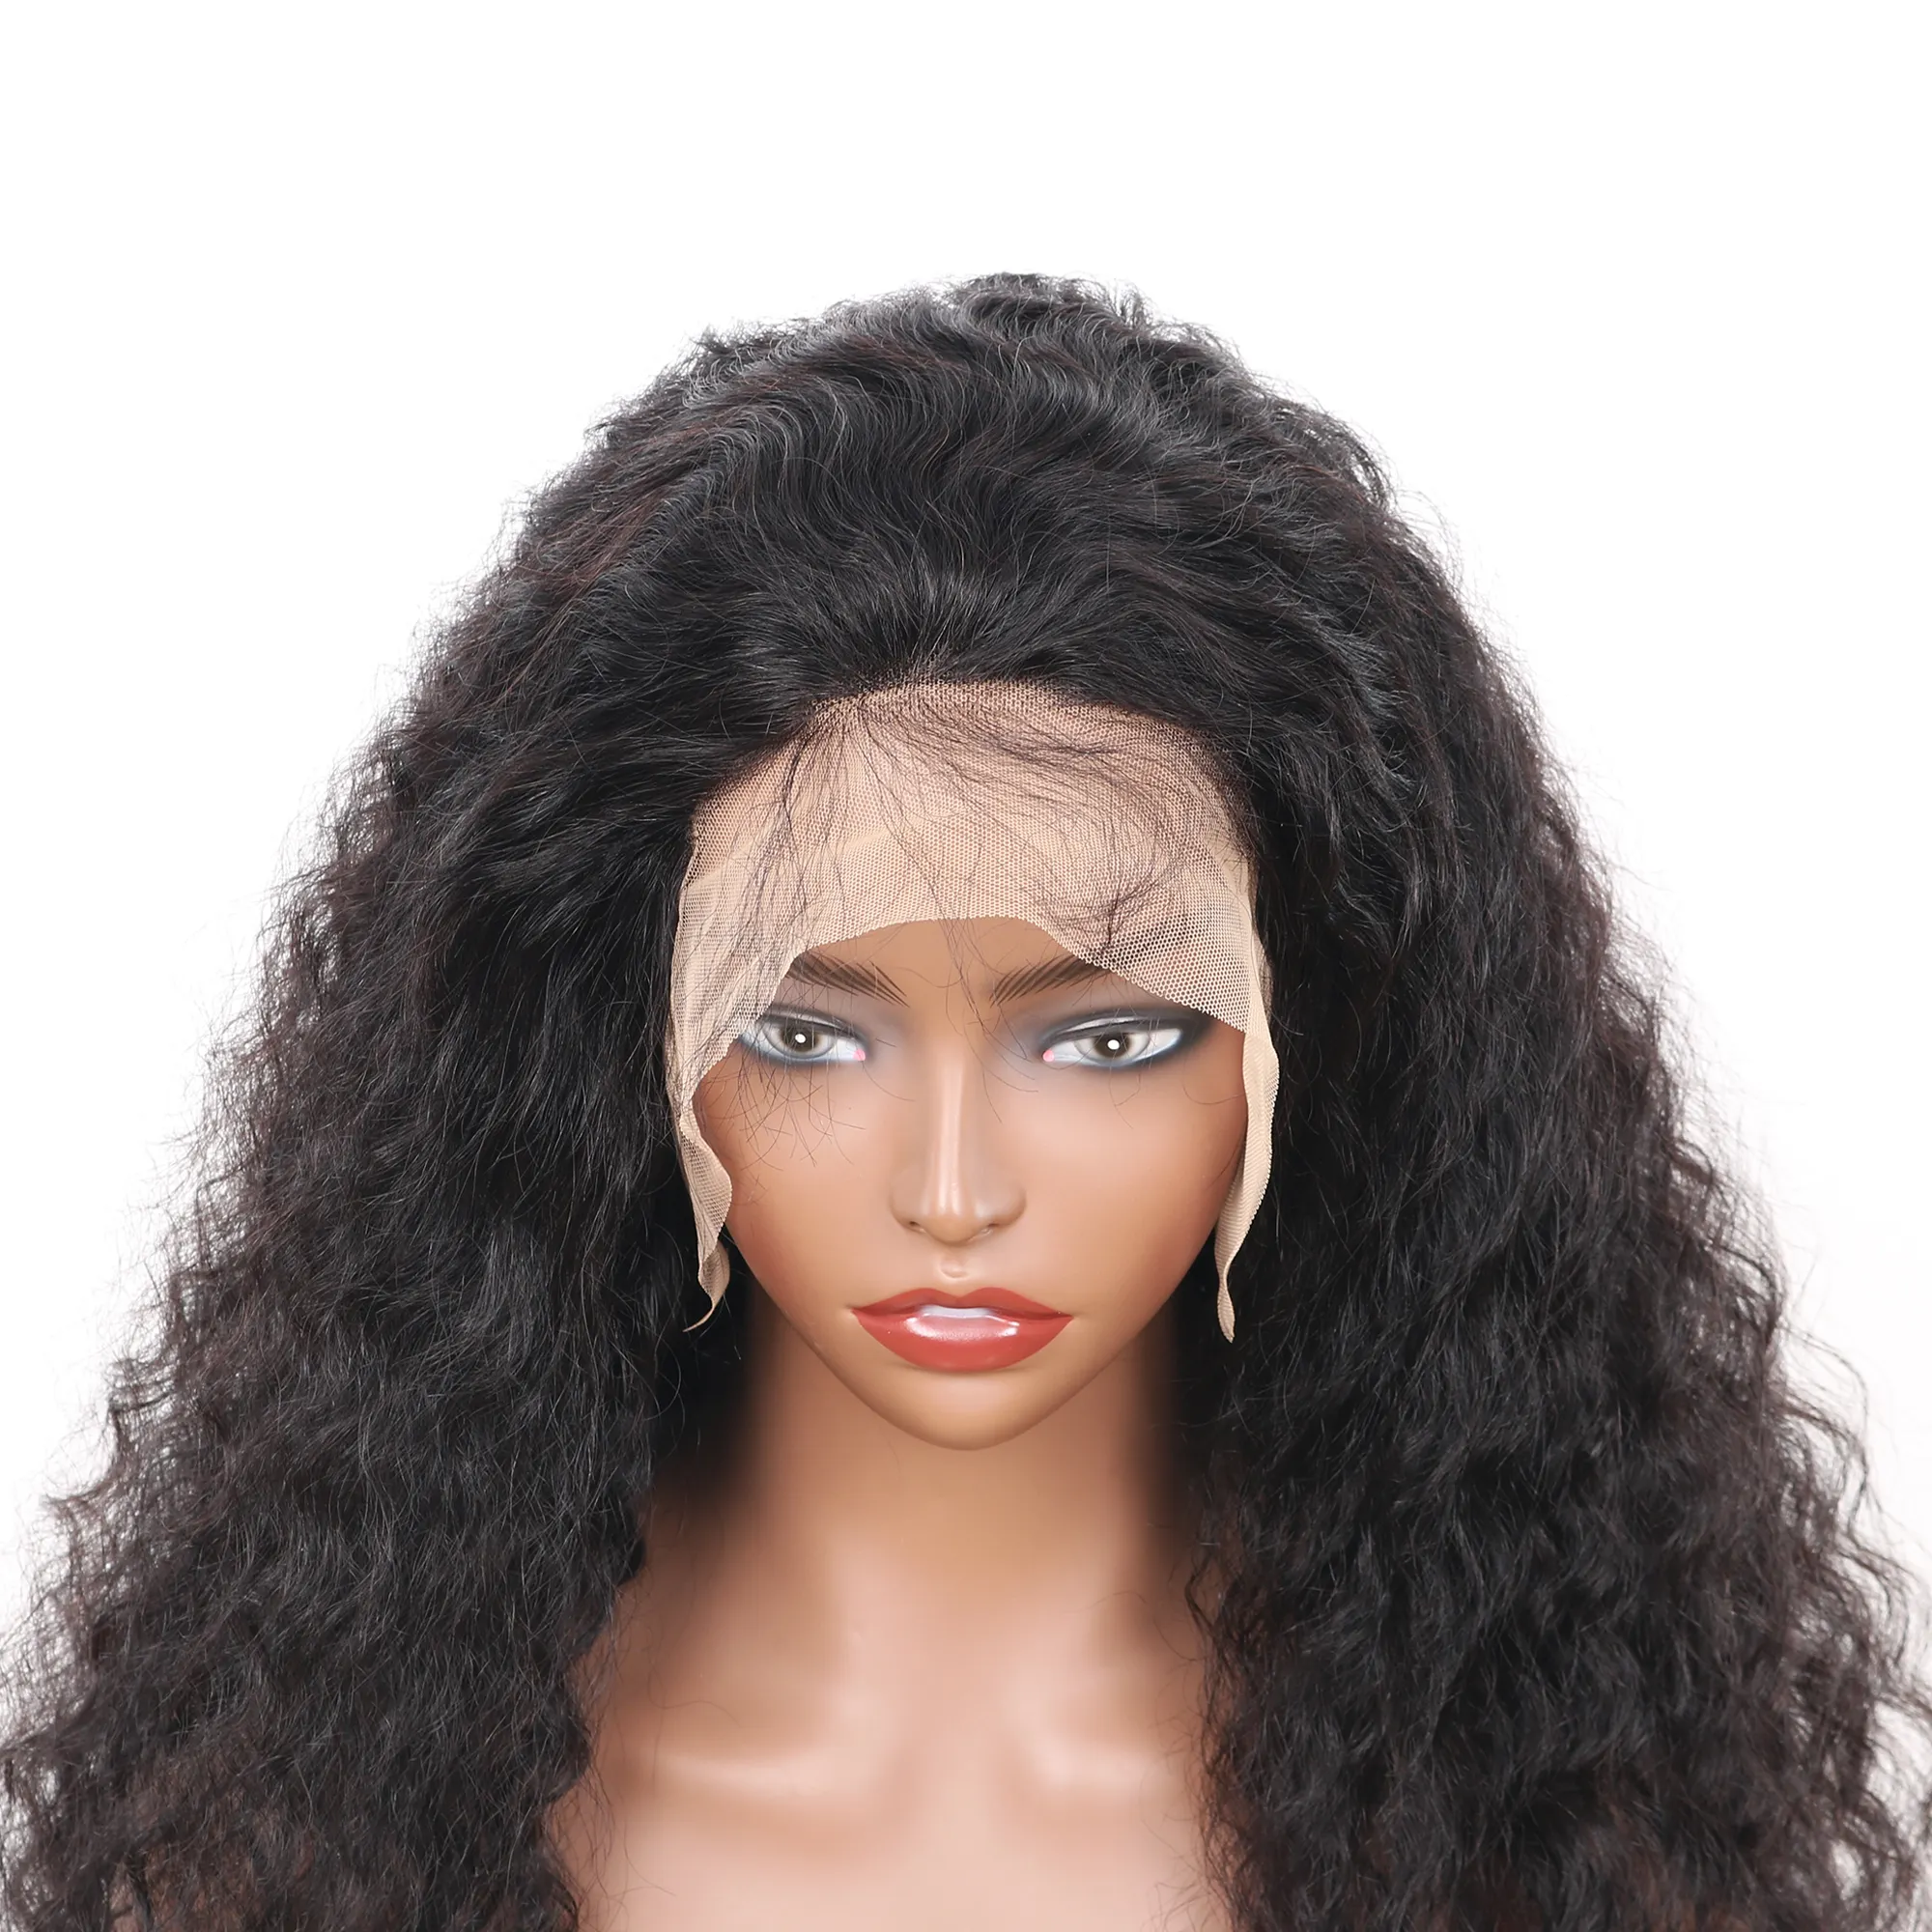 Peruca dianteira de renda transparente 2x6 com cabelo humano, preta, pré-arrancada, 8-40 polegadas, de alta qualidade, natural, suíça, preta e profunda